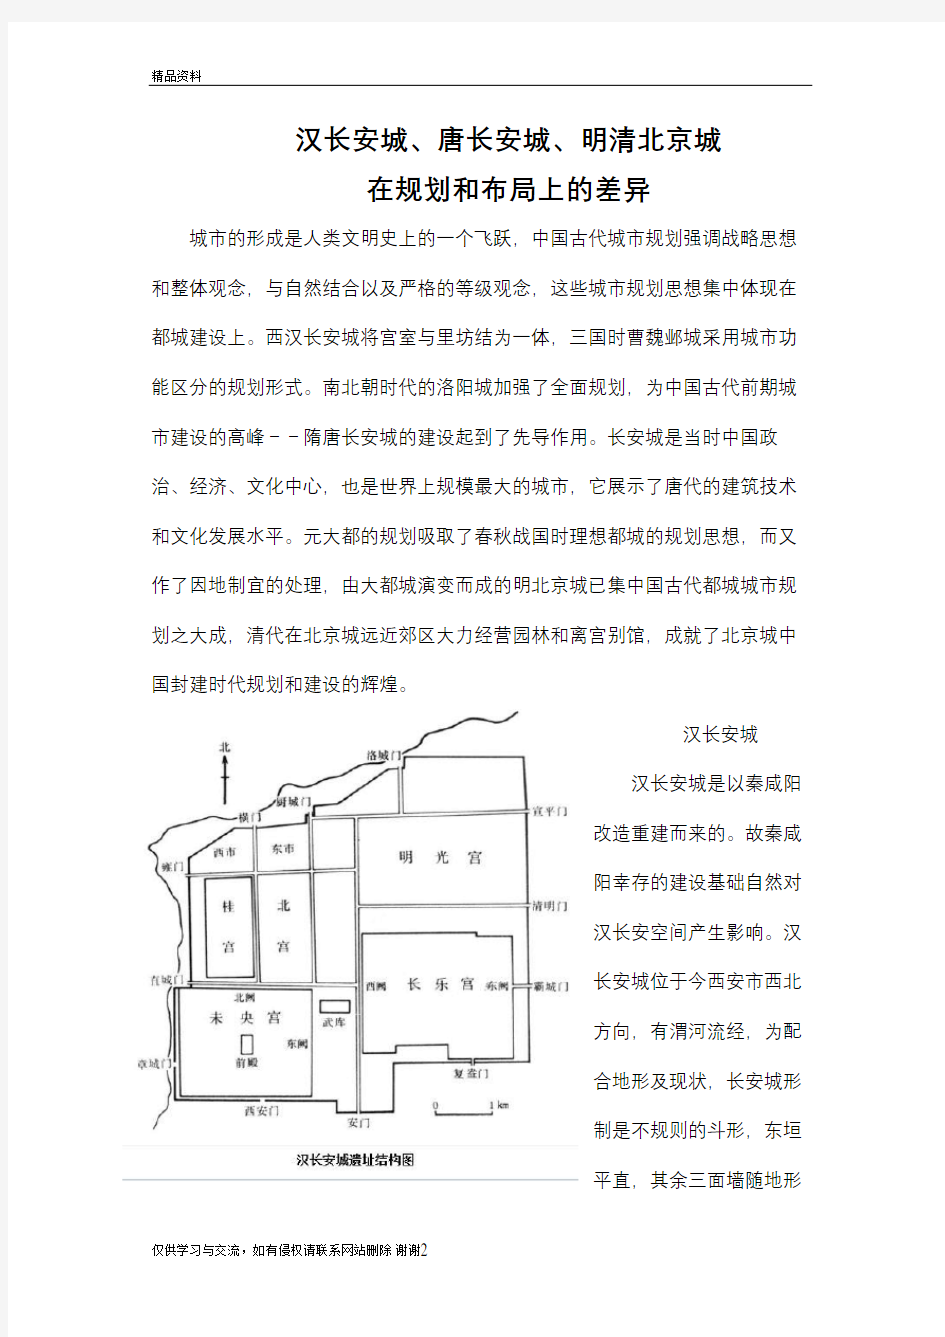 汉长安城、唐长安城、明清北京城布局差异教学文稿